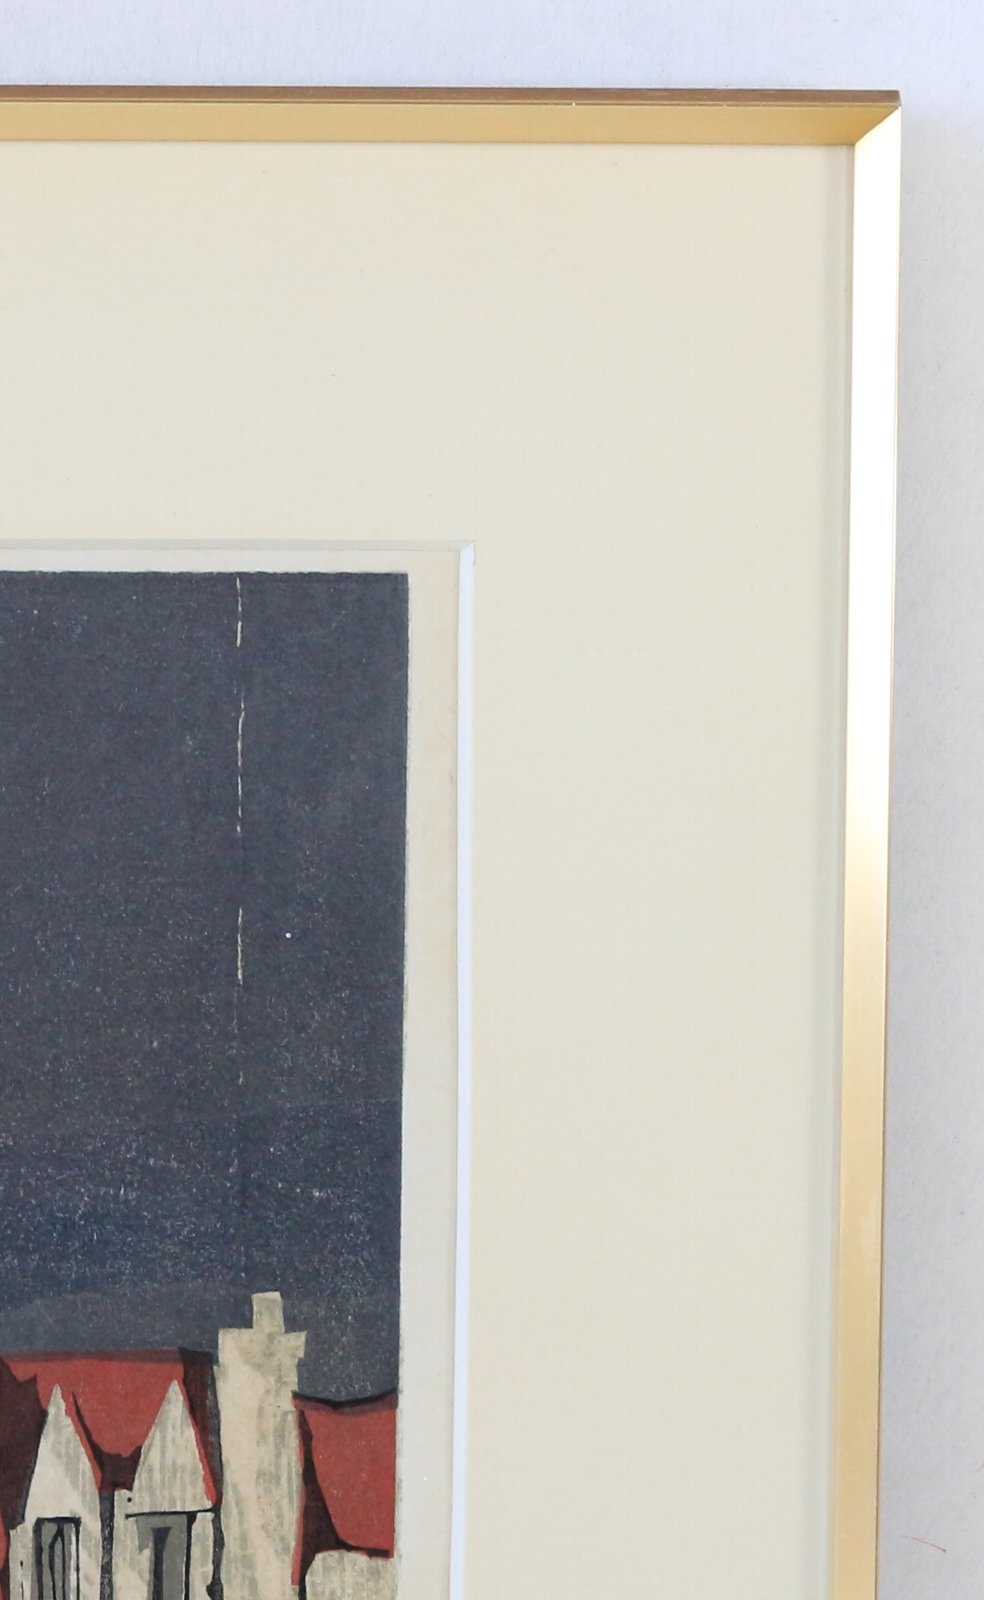 木版画 高橋信一「パリの屋根」商品番号077- 絵のある暮らし・絵になる暮らし｜武田画廊